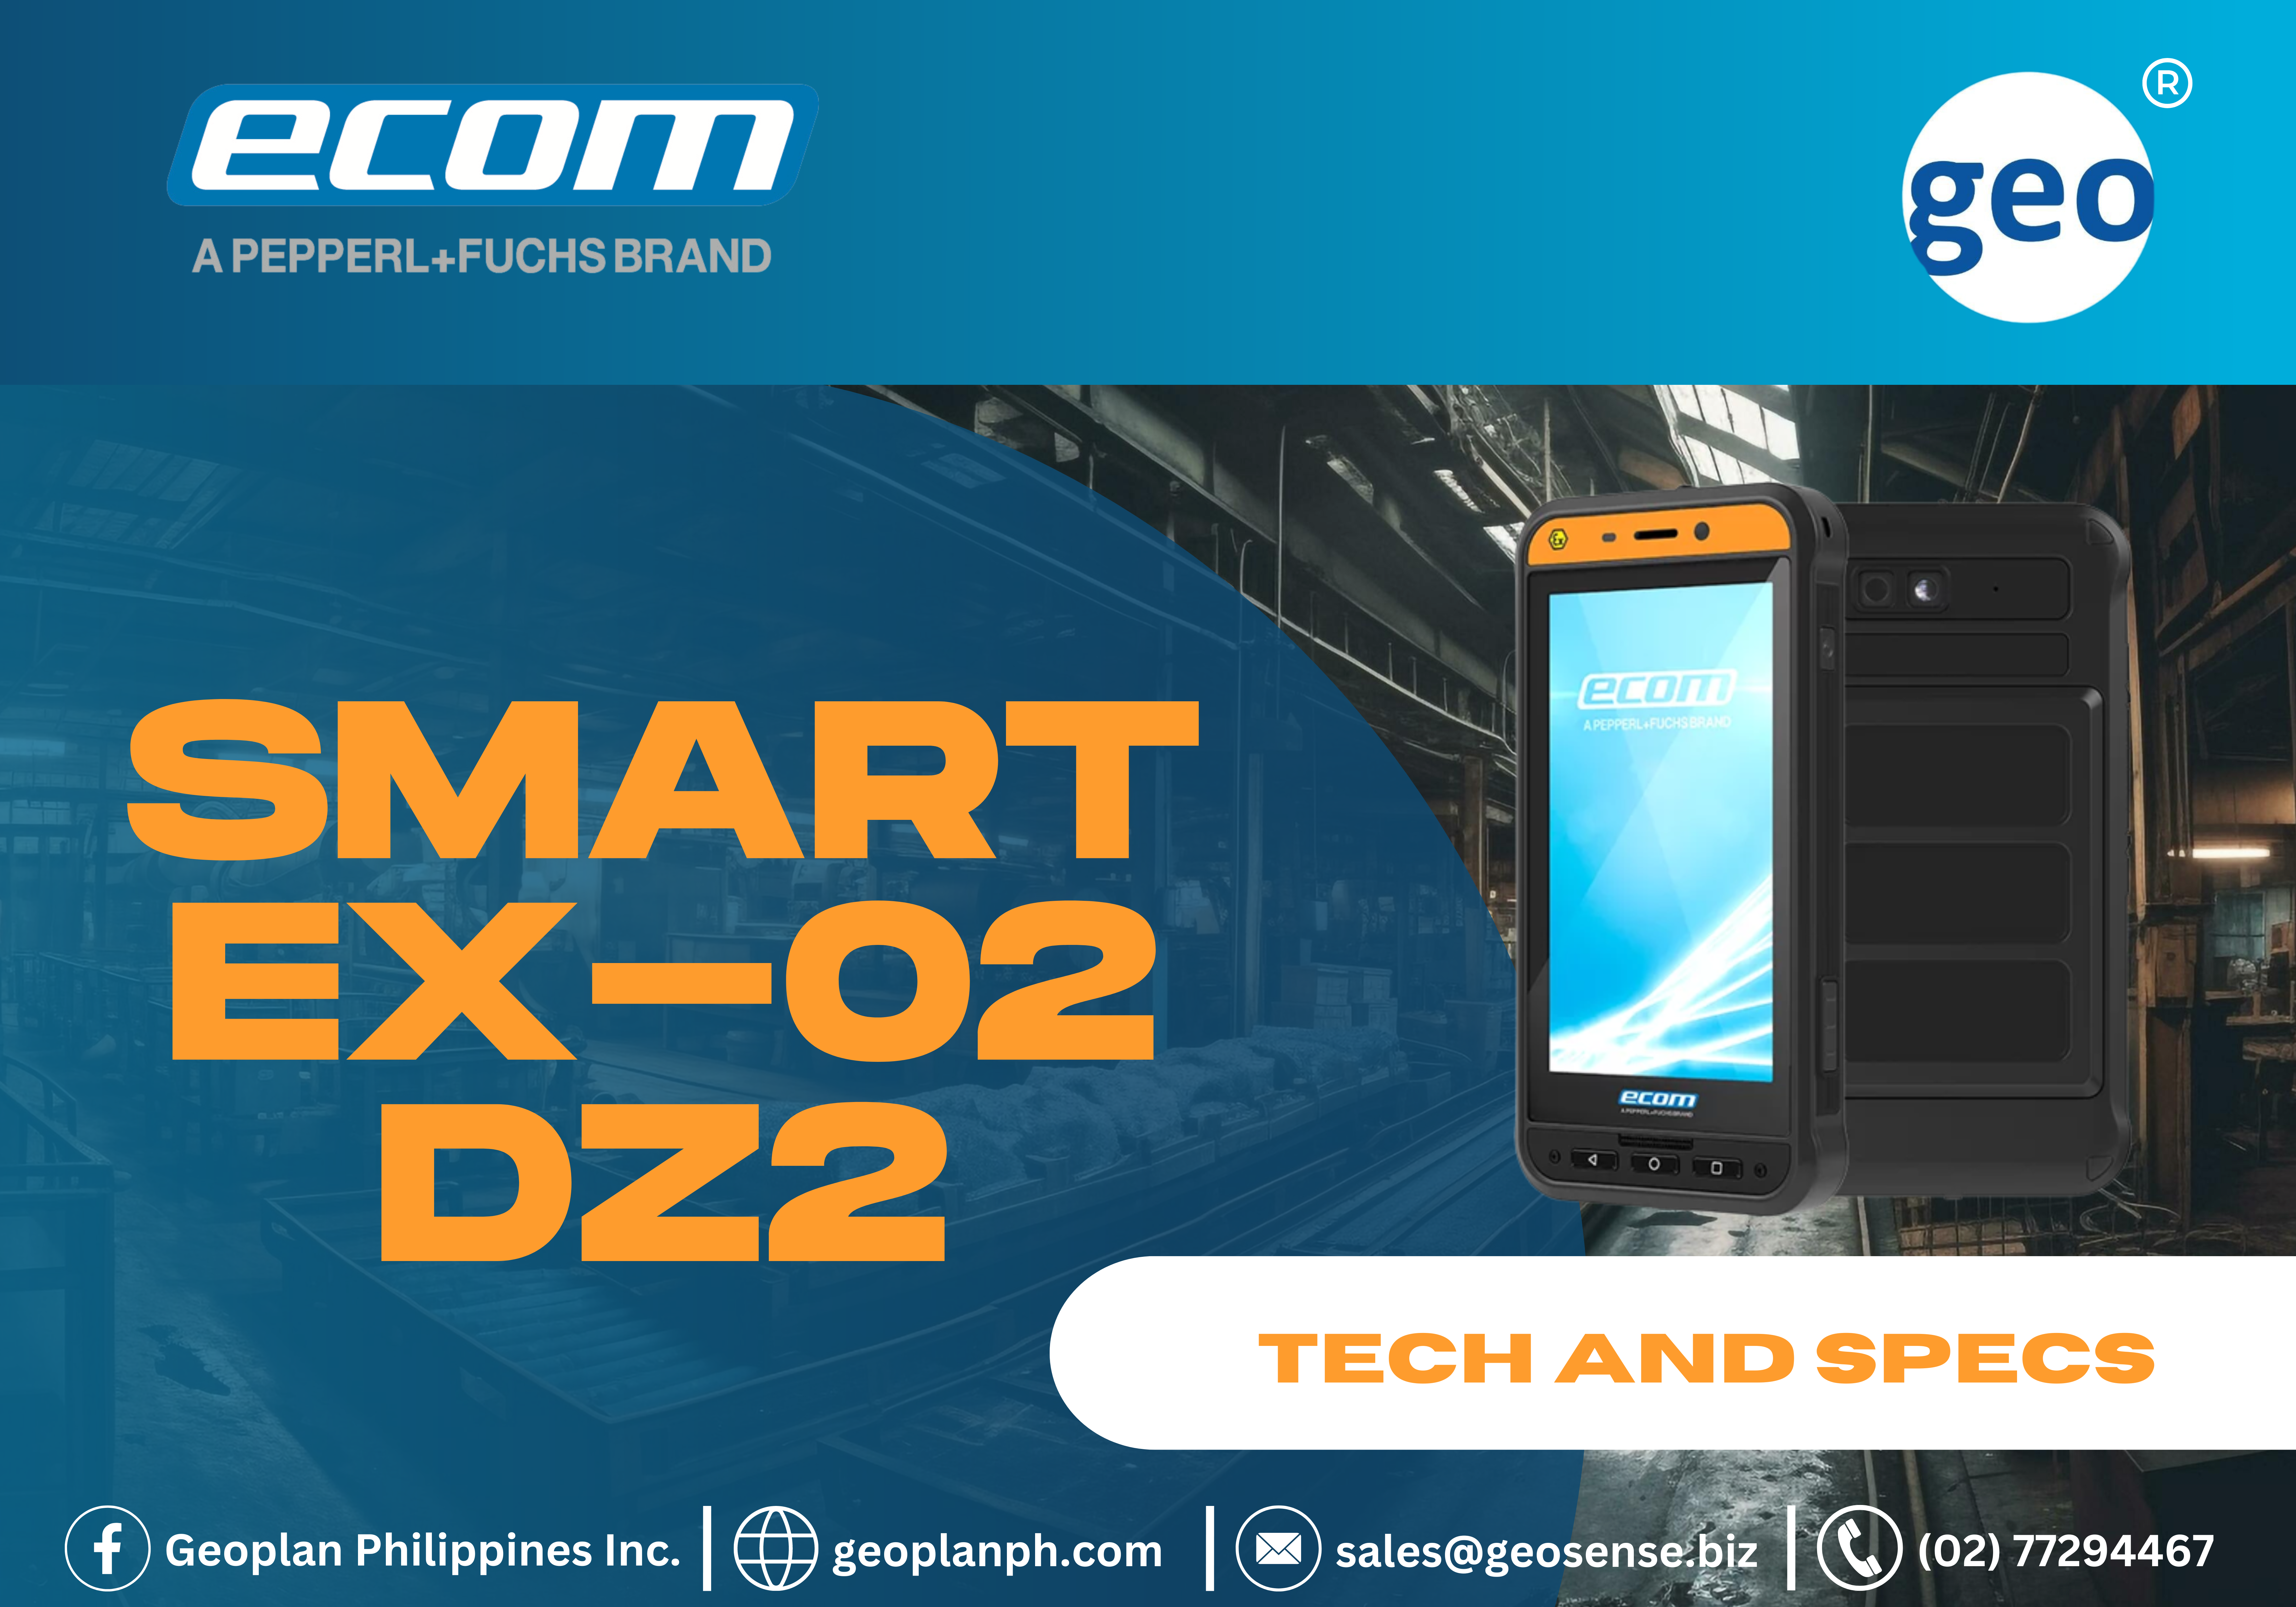 ECOM : The Tech and Specs of Smart EX-02 DZ2